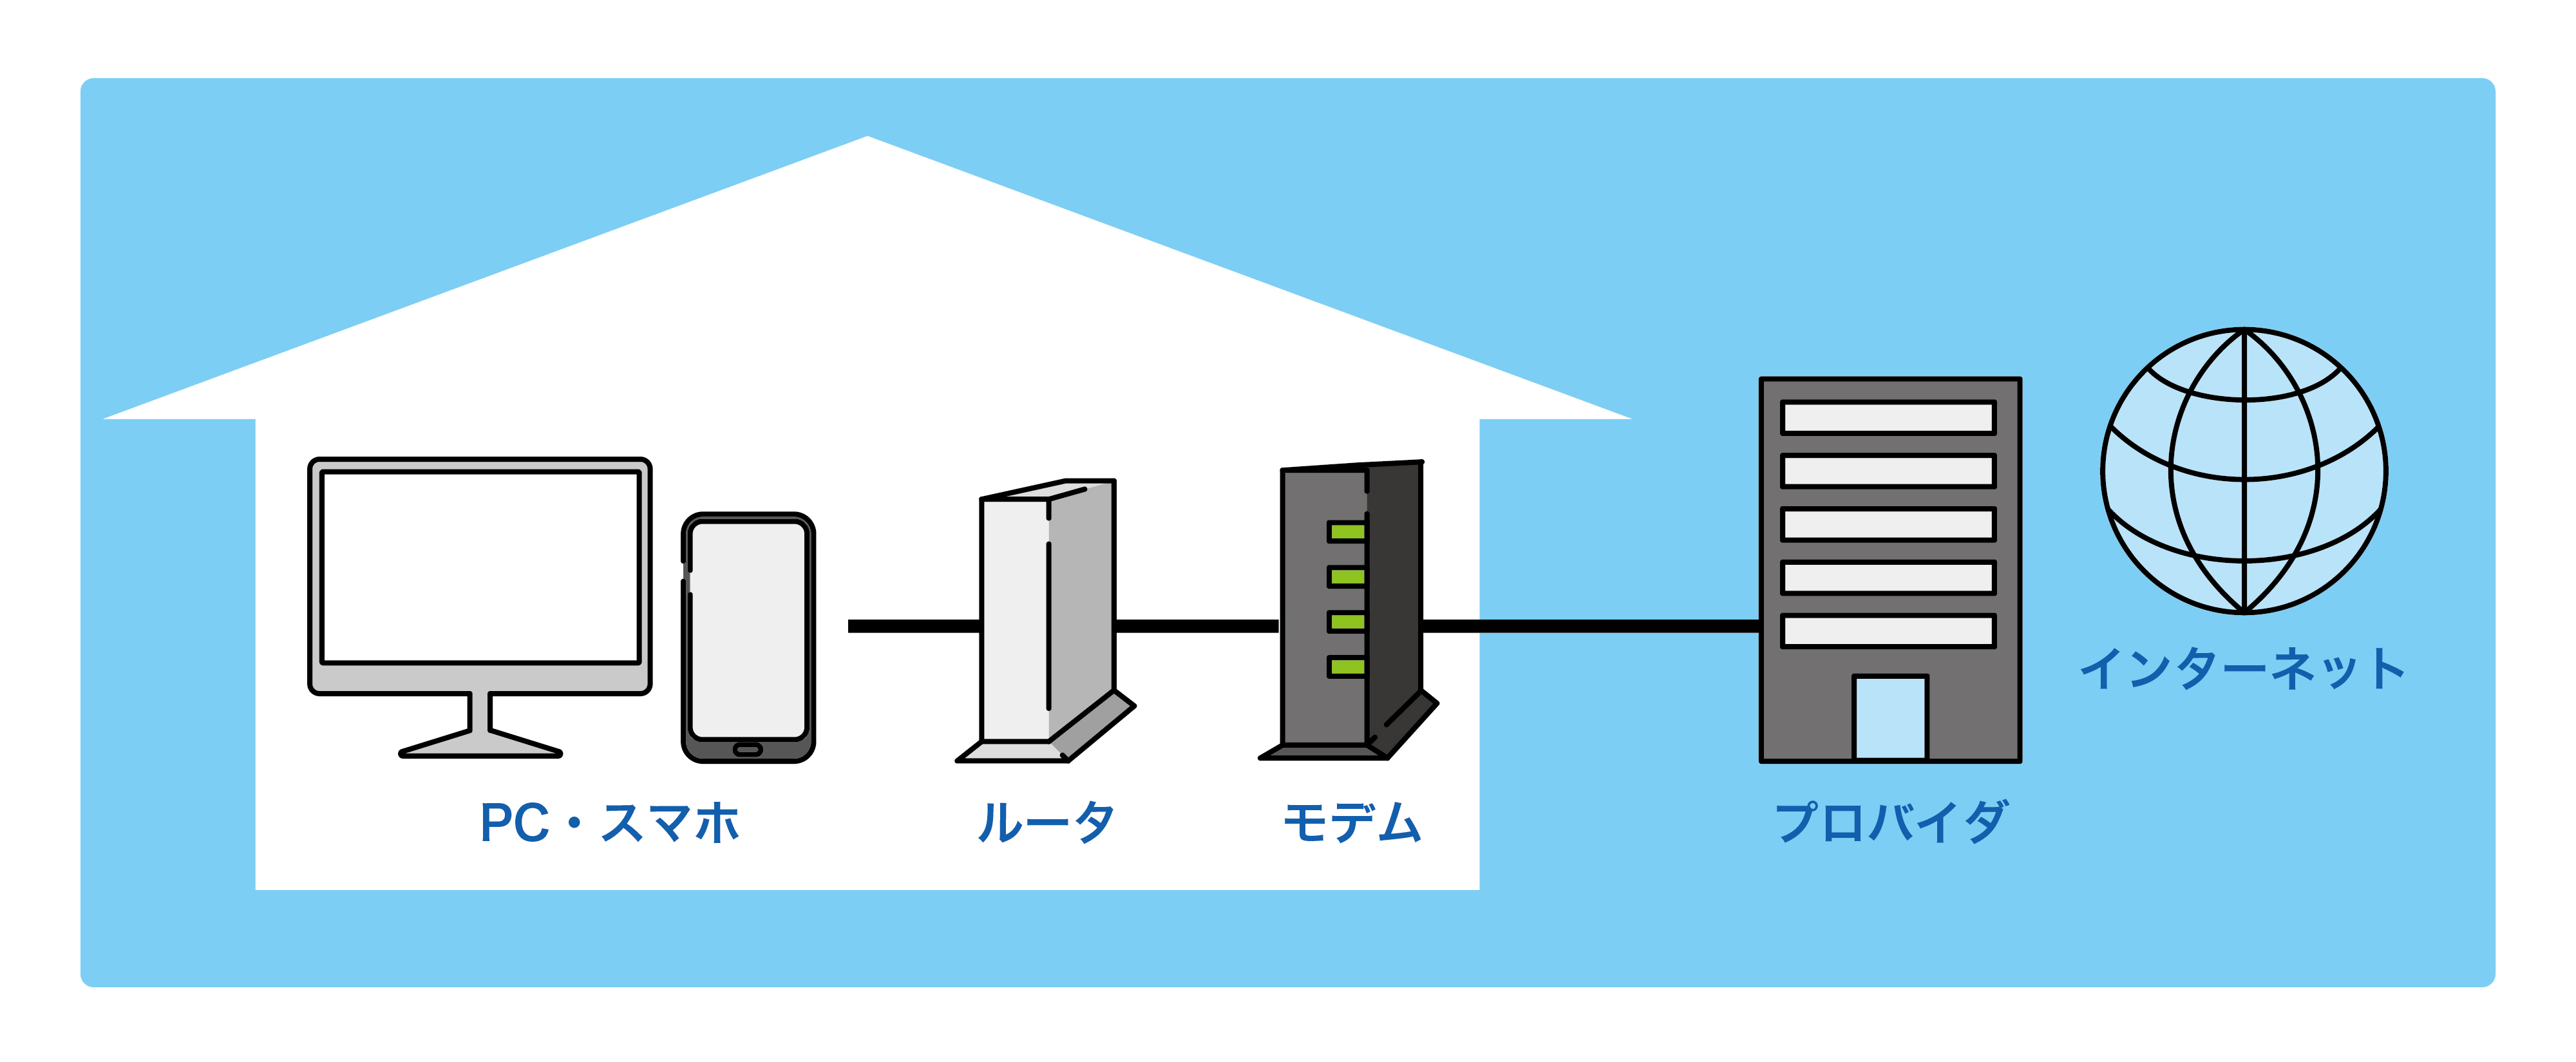 家庭のネットワーク接続イメージ図